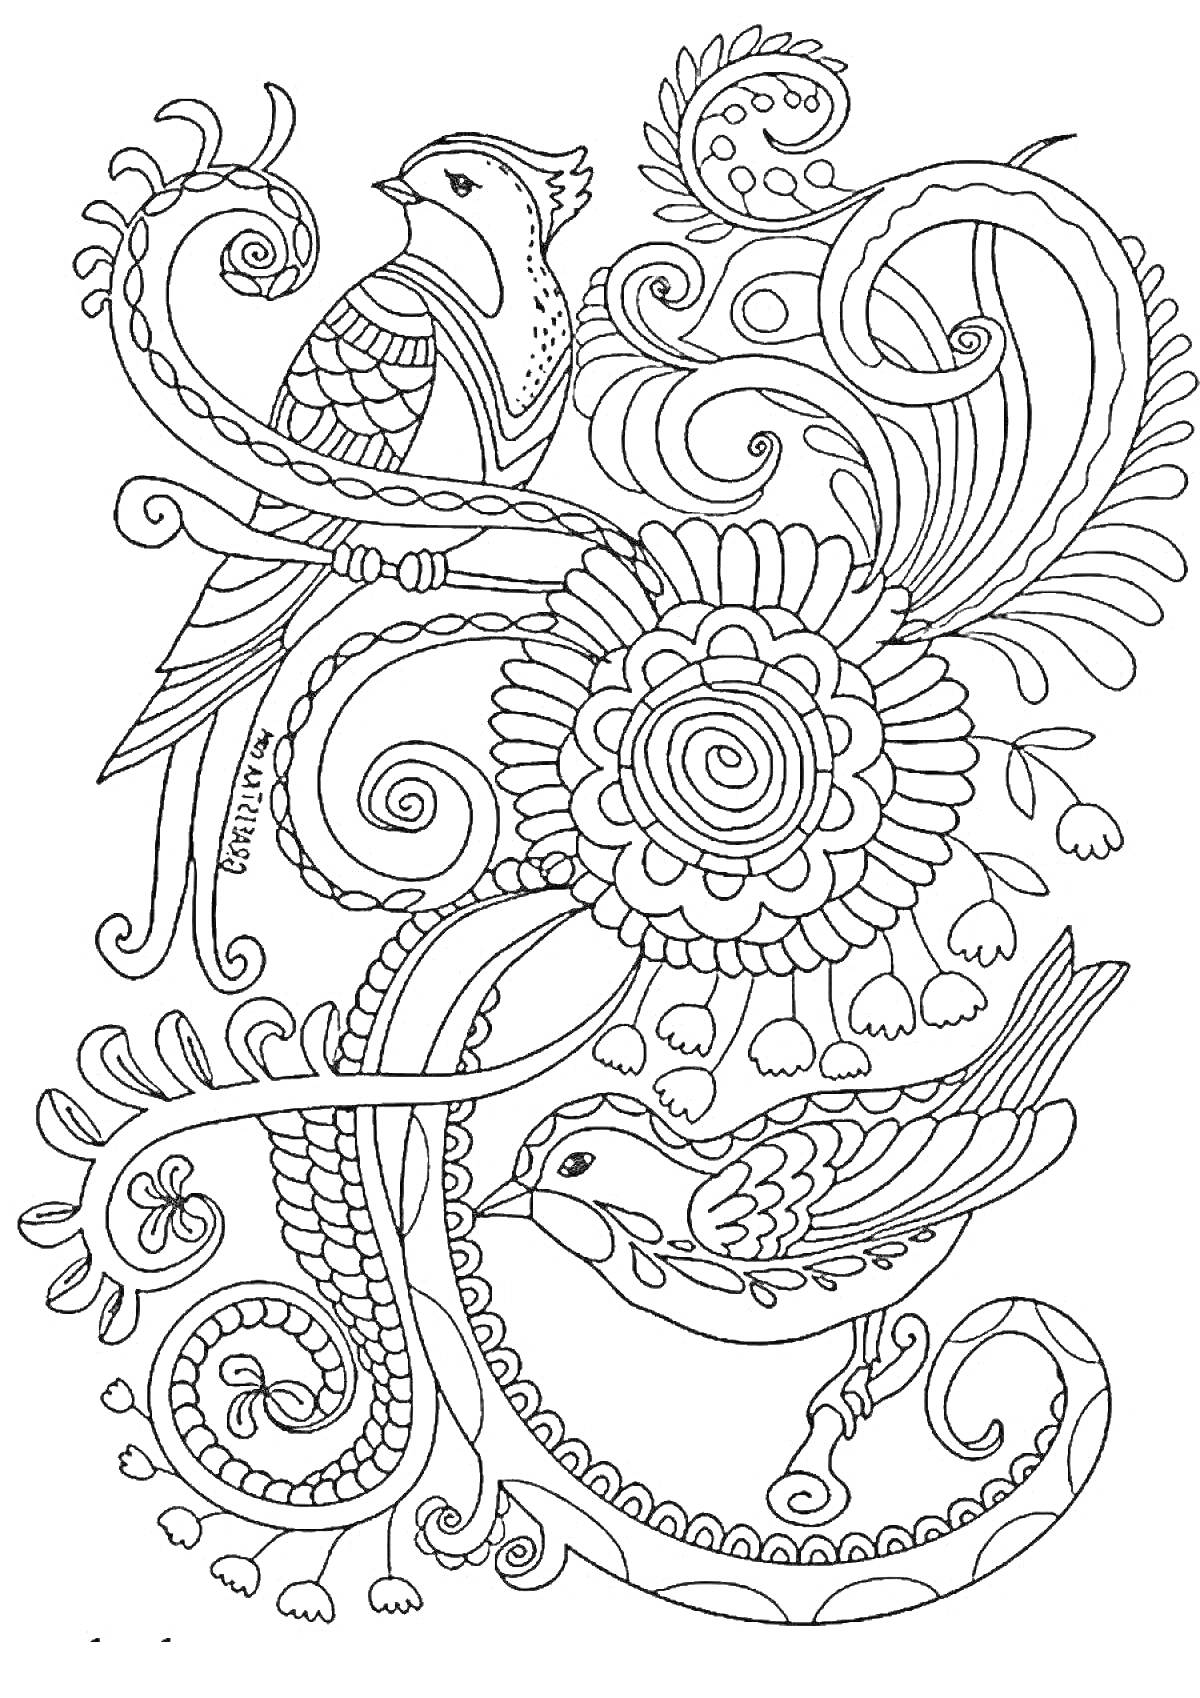 Раскраска Птицы на ветвях с узорчатым цветком и завитками